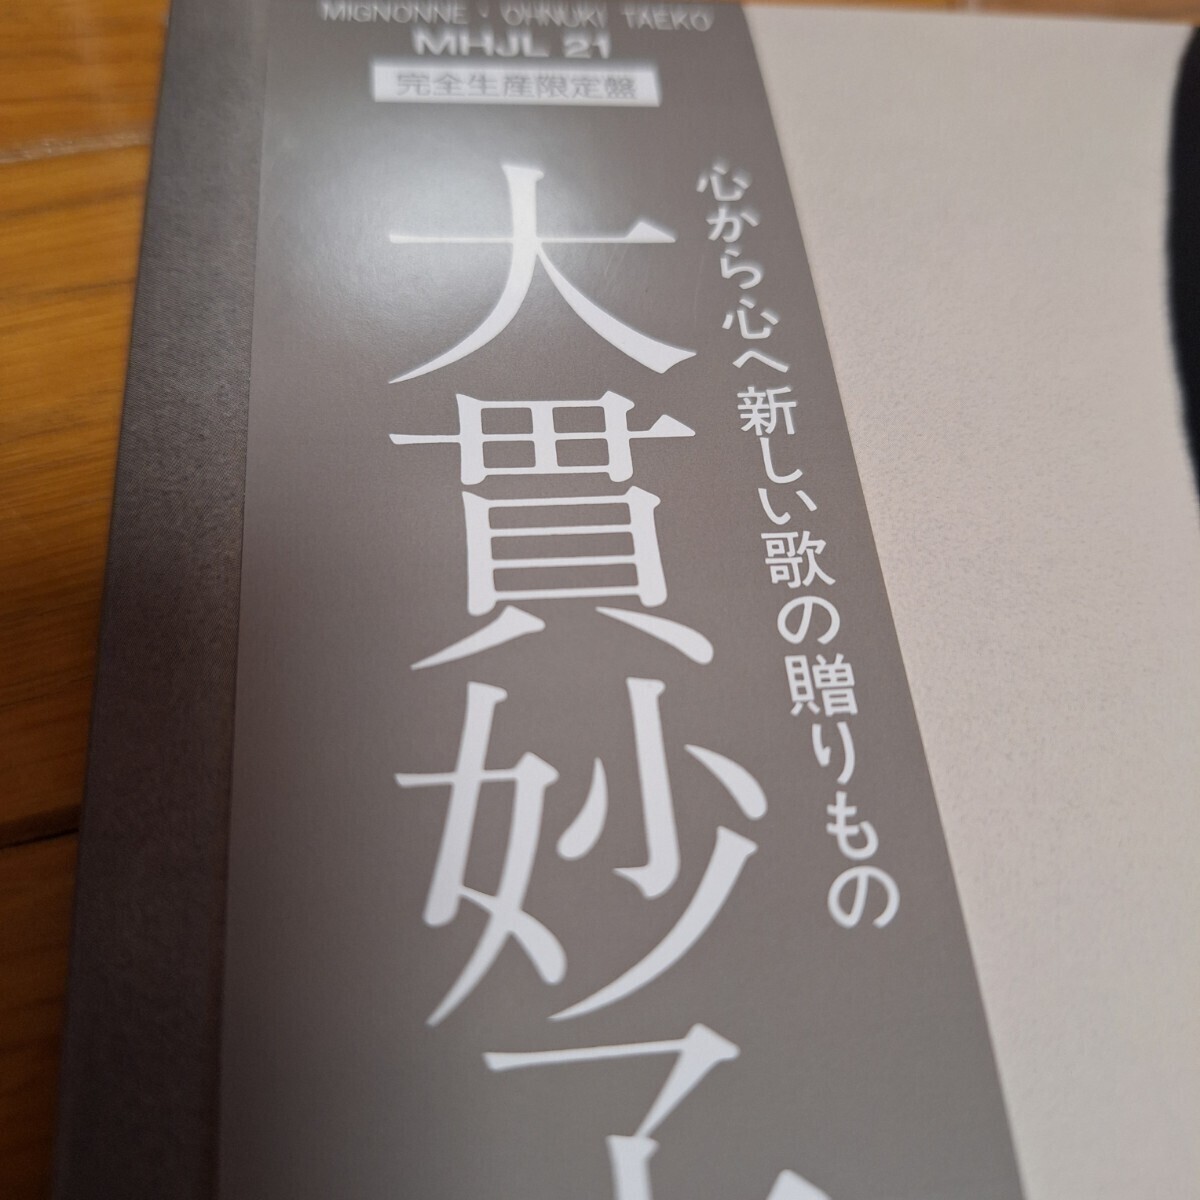 ミニヨン　MIGNONNE(3rd Press)　大貫妙子　クリア・パープル・ヴァイナル仕様　アナログレコード　LP